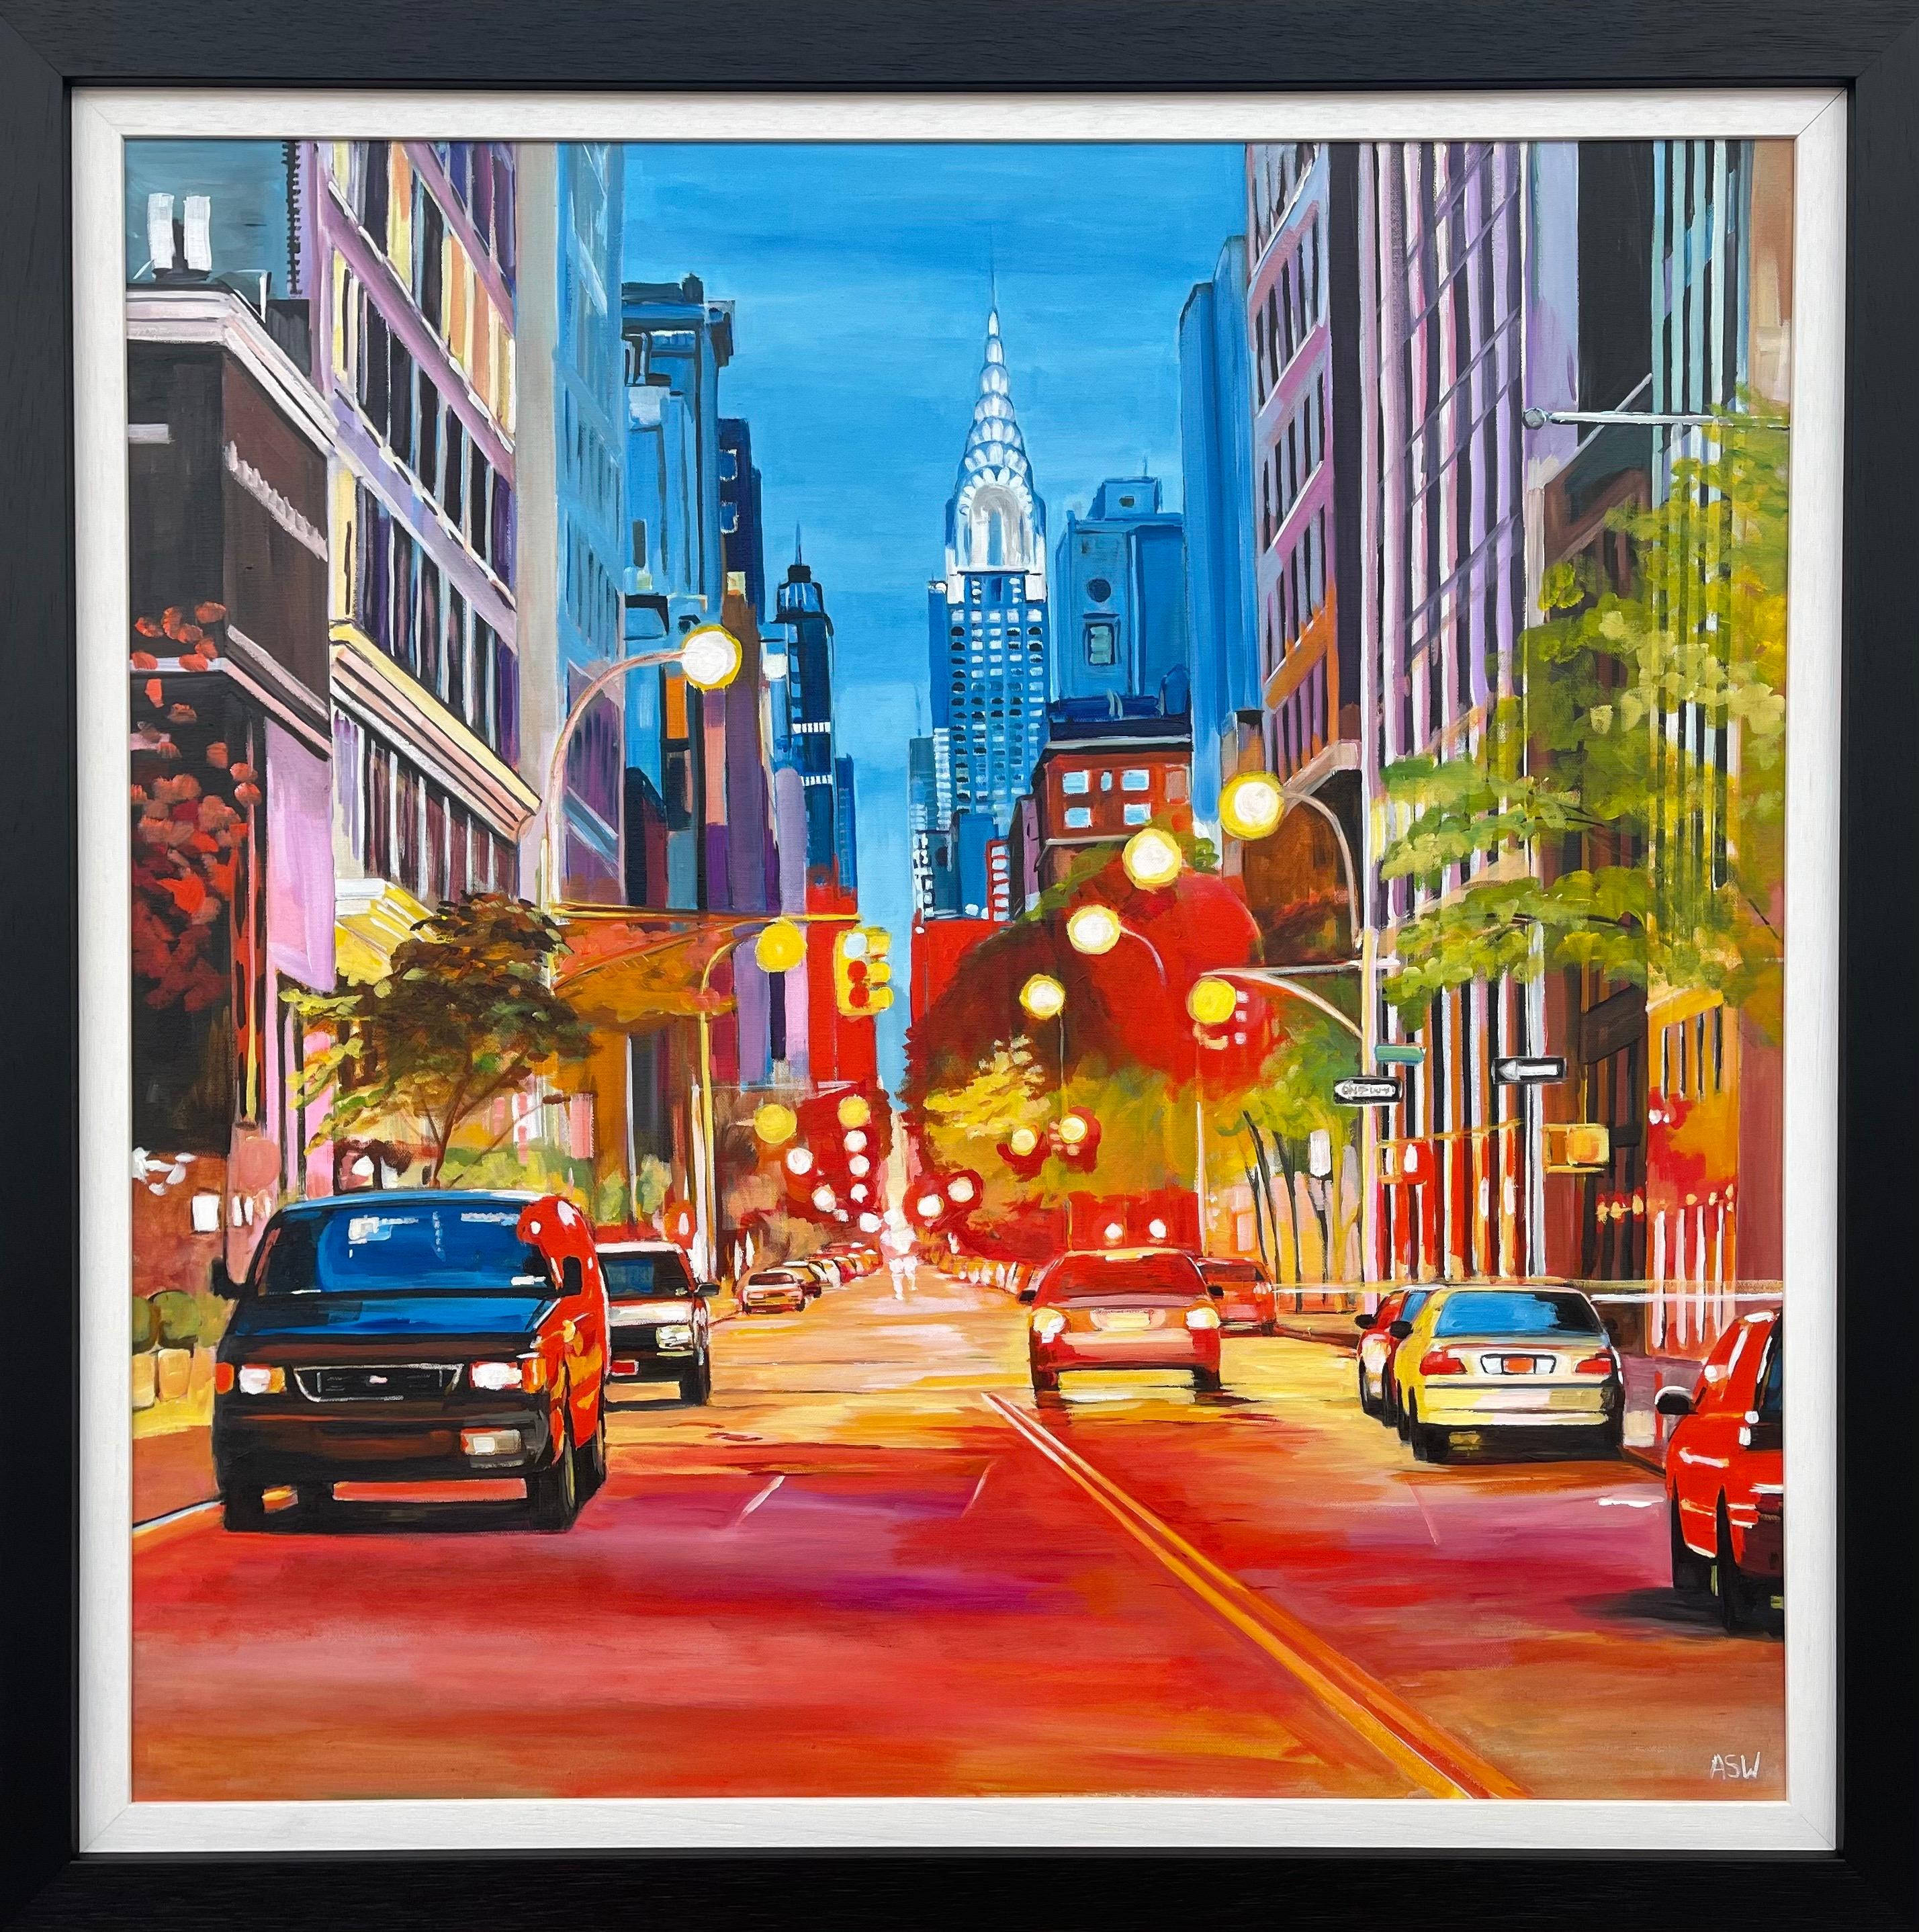 Gemälde des Chrysler-Gemäldes in New York City des zeitgenössischen britischen Künstlers